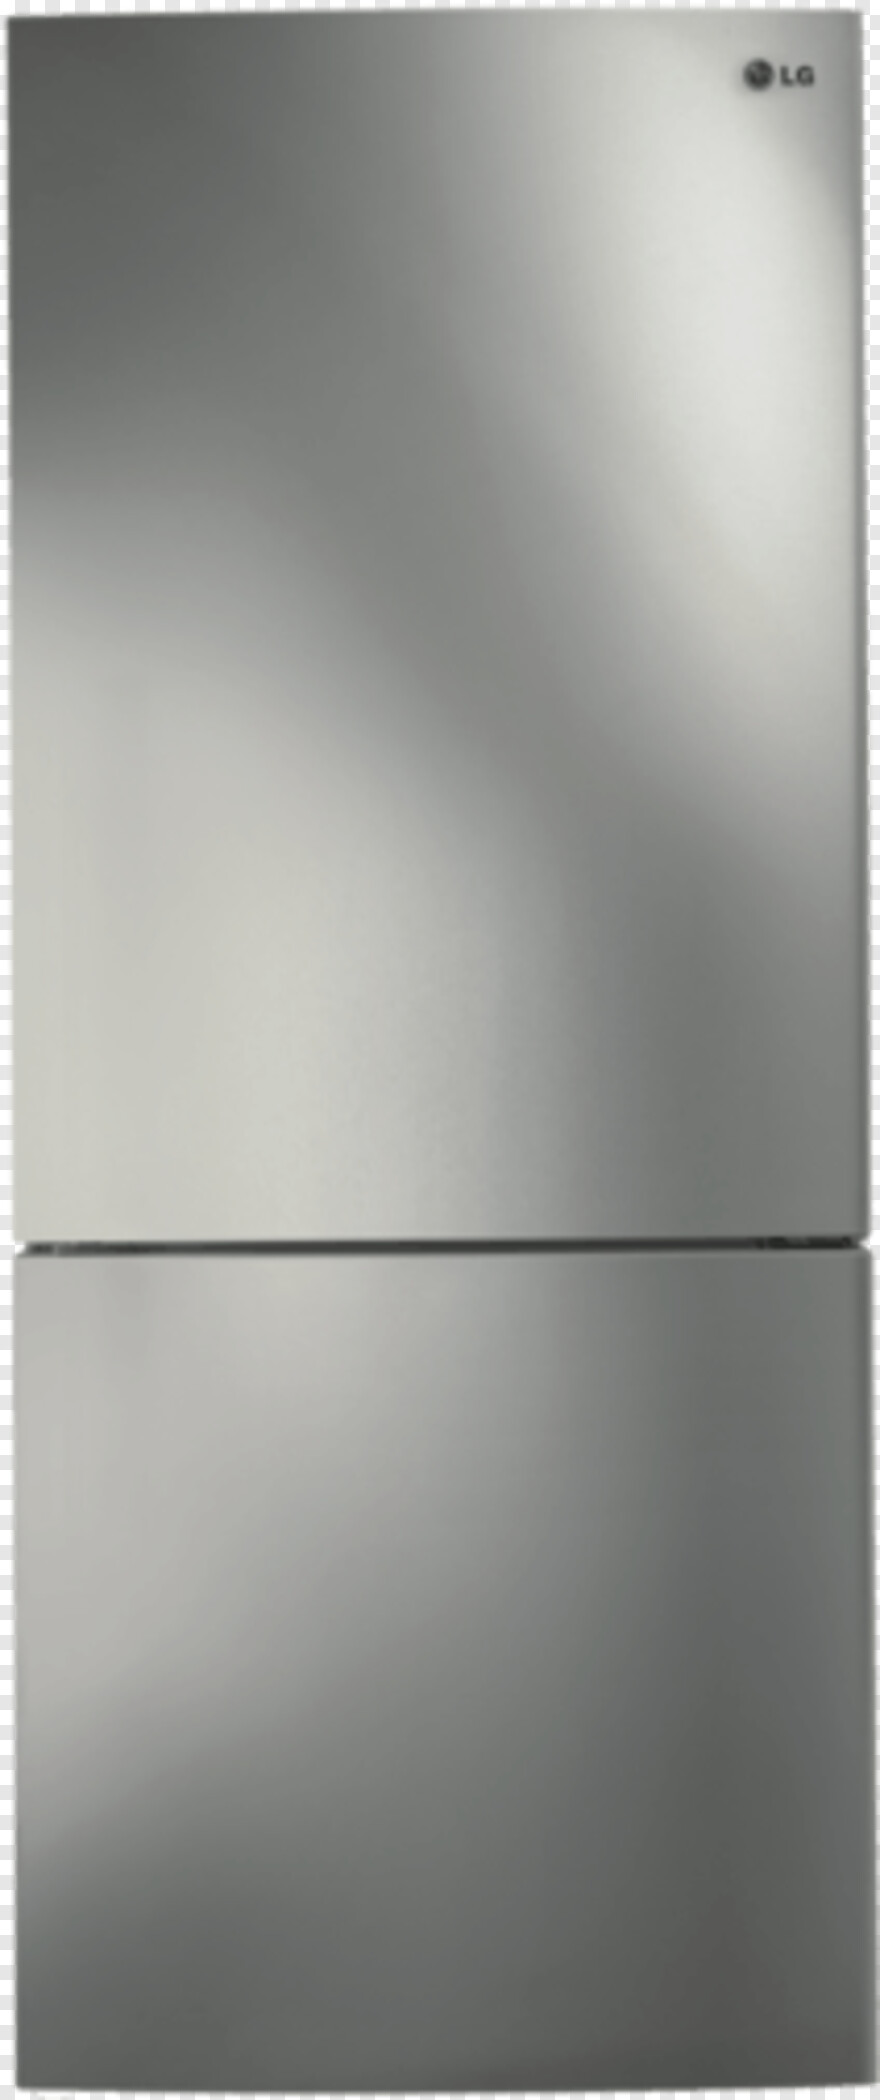 single-door-fridge # 324264